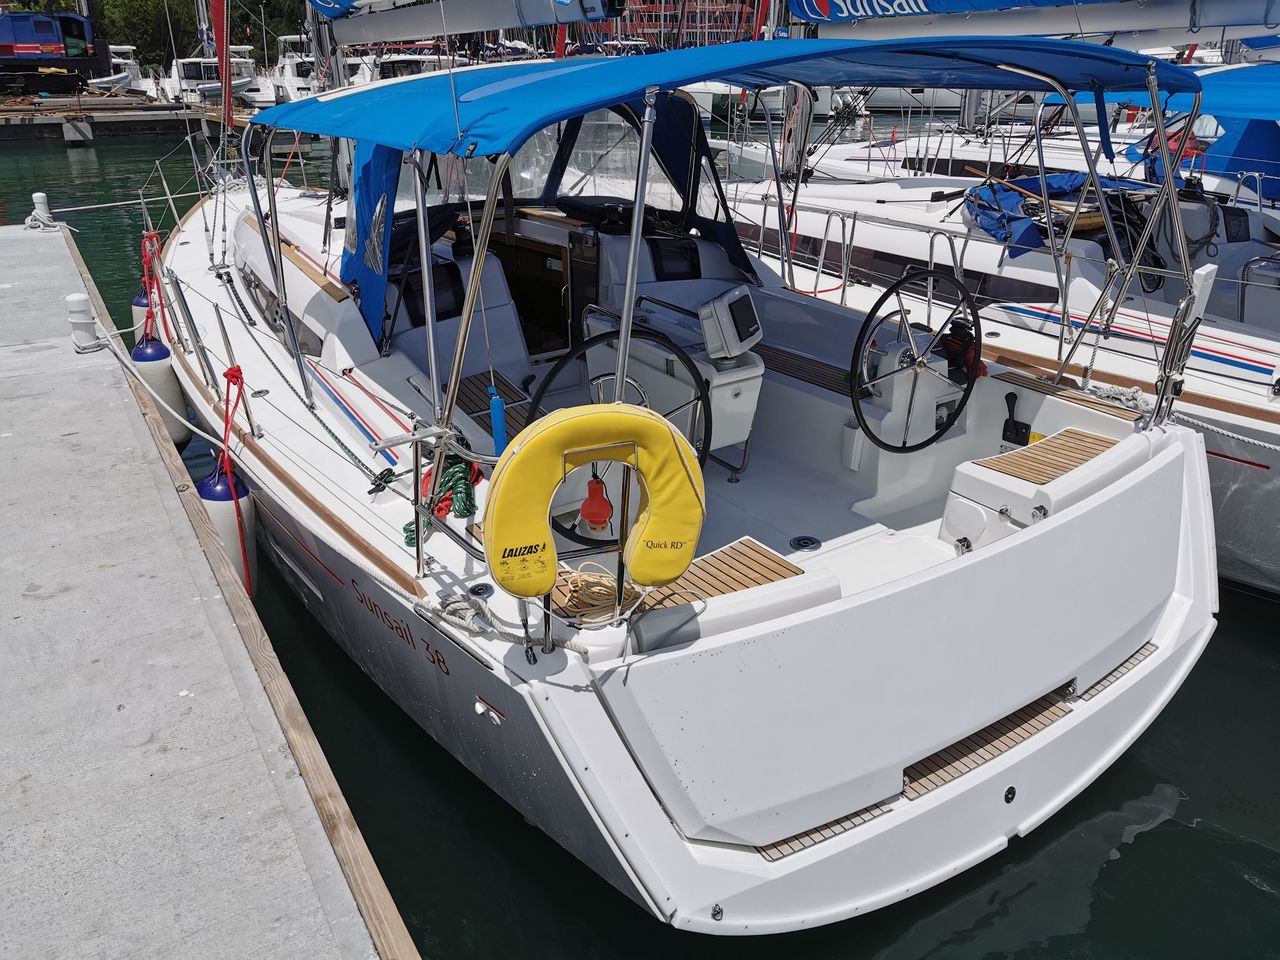 Jeanneau Sun Odyssey 389 (sailboat) for sale